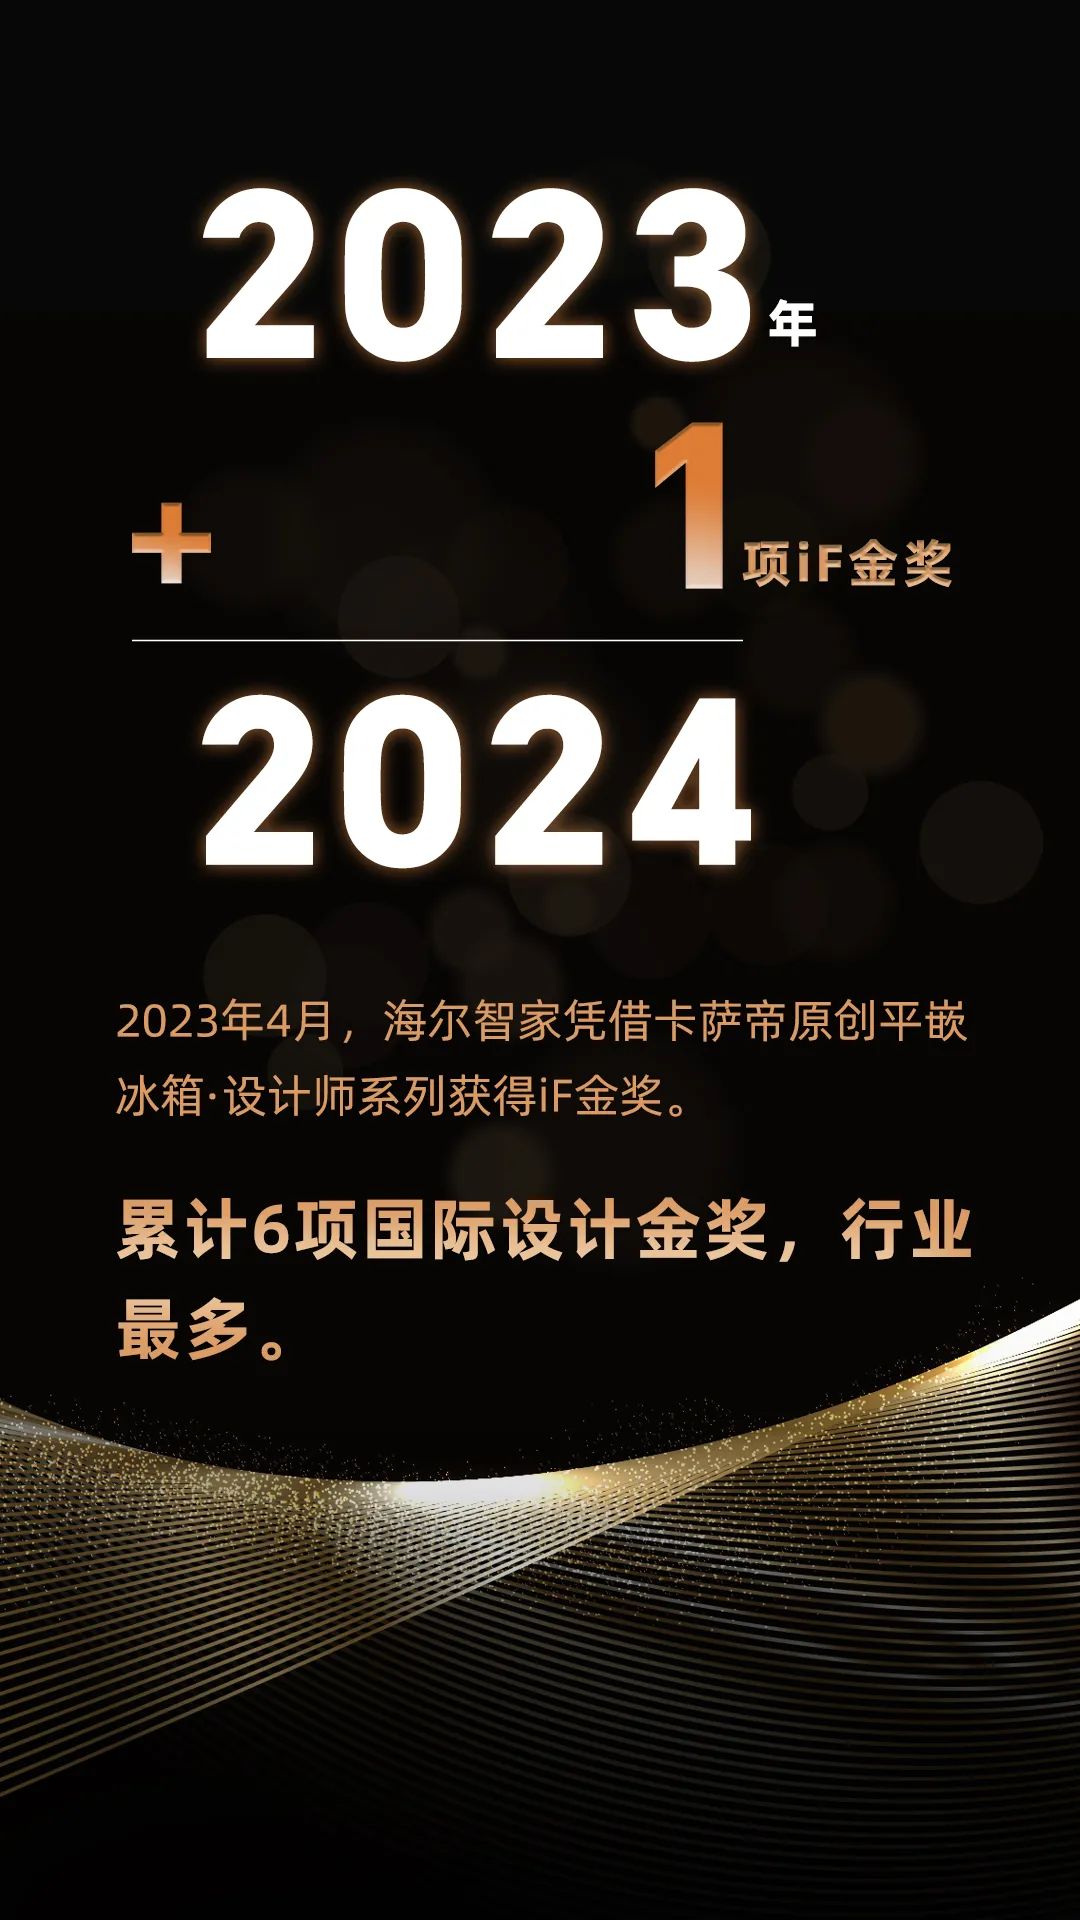 海尔智家科技：2023年+1=2024